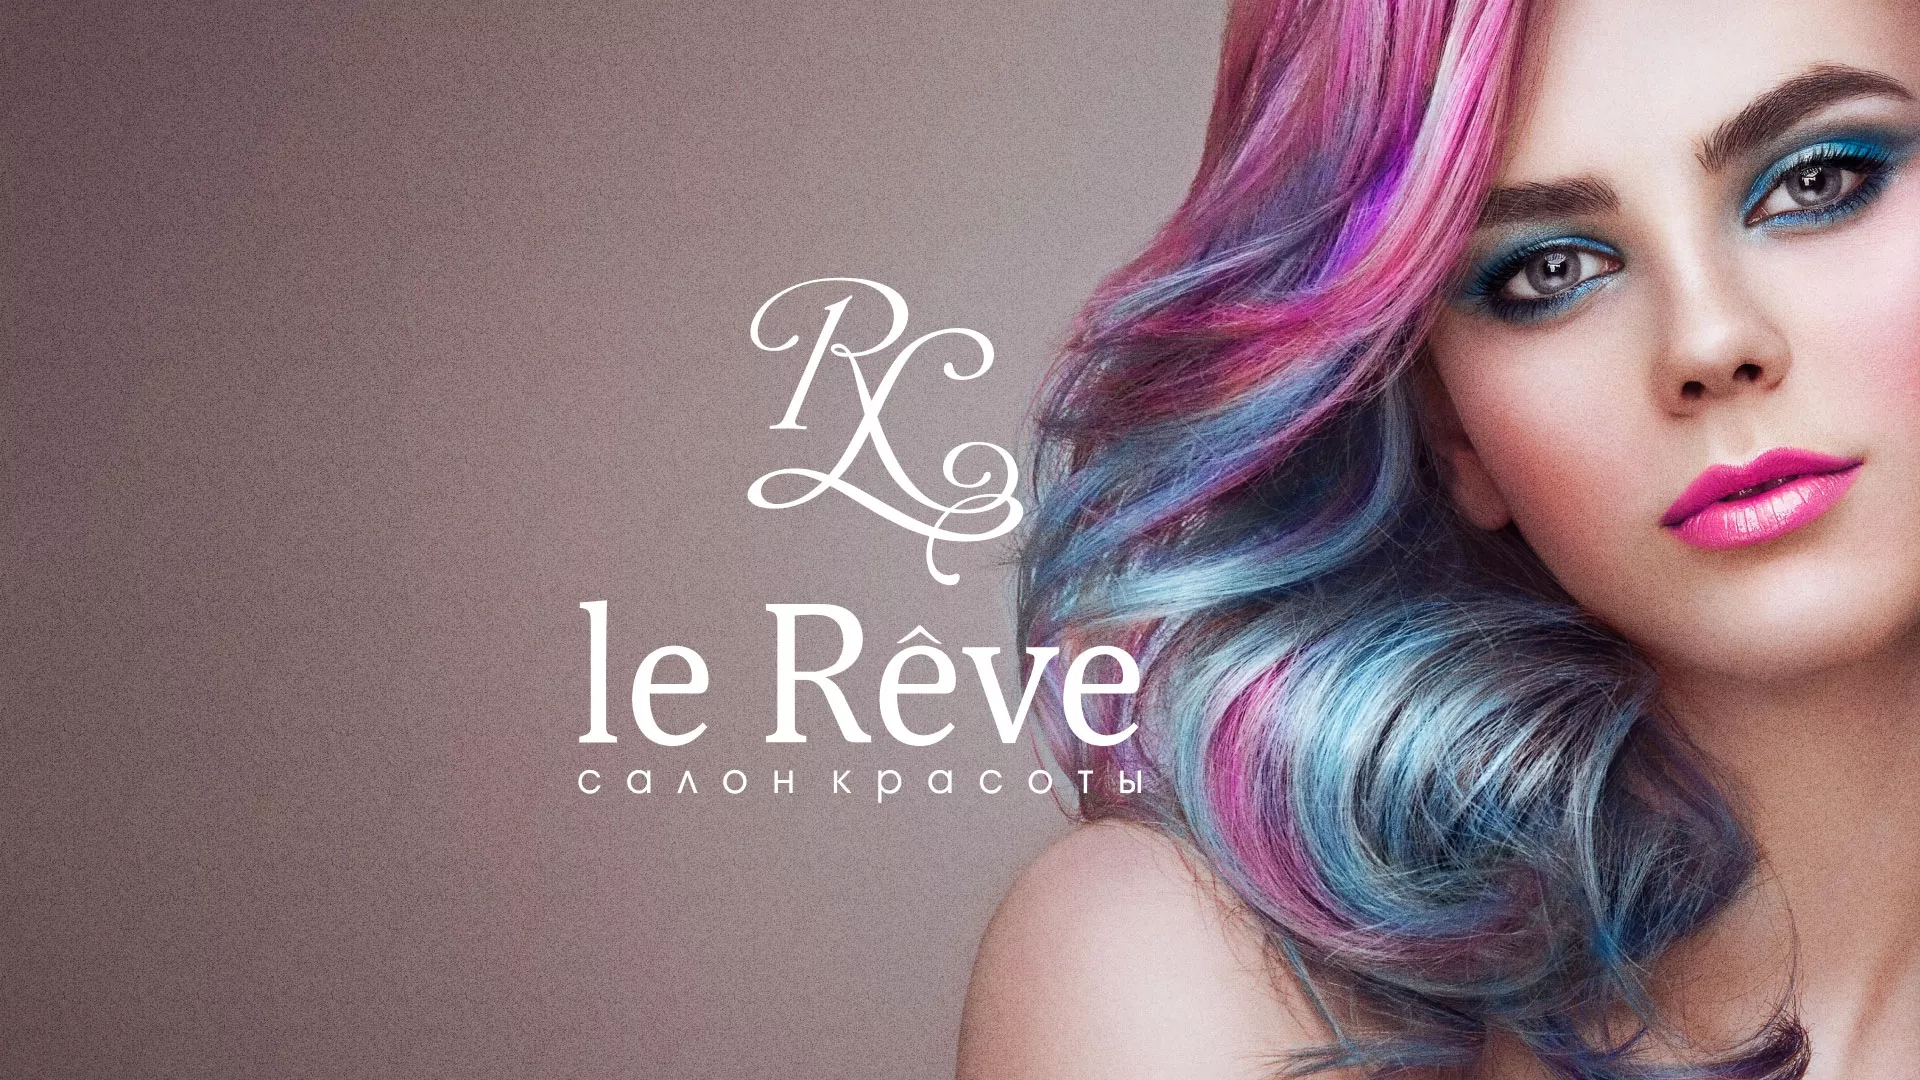 Создание сайта для салона красоты «Le Reve» в Комсомольске-на-Амуре